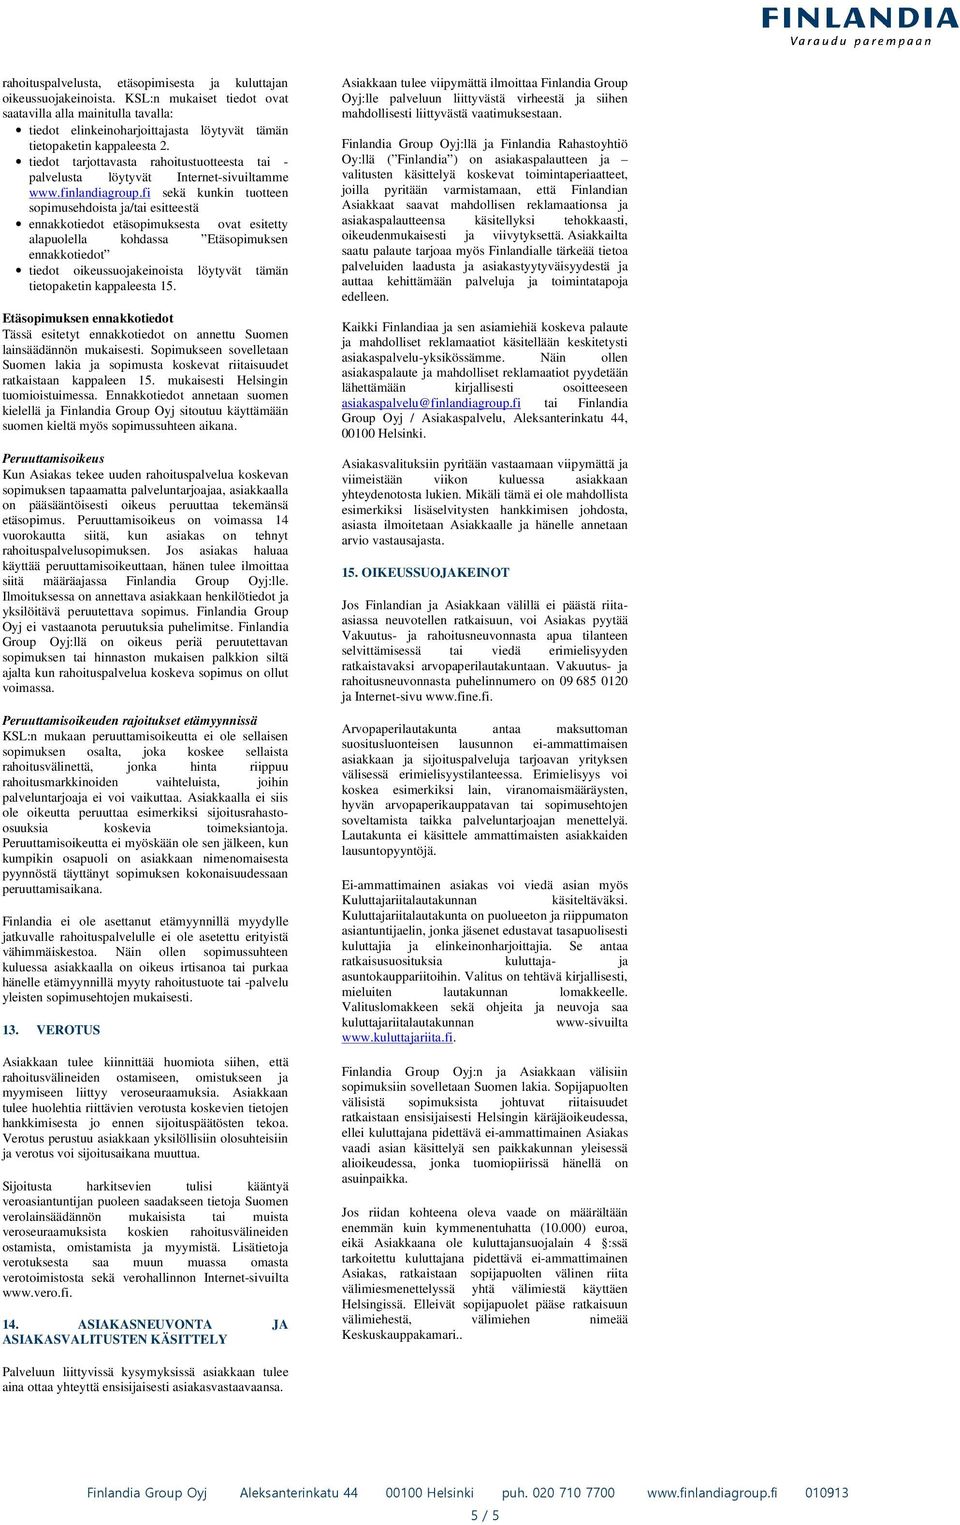 tiedot tarjottavasta rahoitustuotteesta tai - palvelusta löytyvät Internet-sivuiltamme www.finlandiagroup.